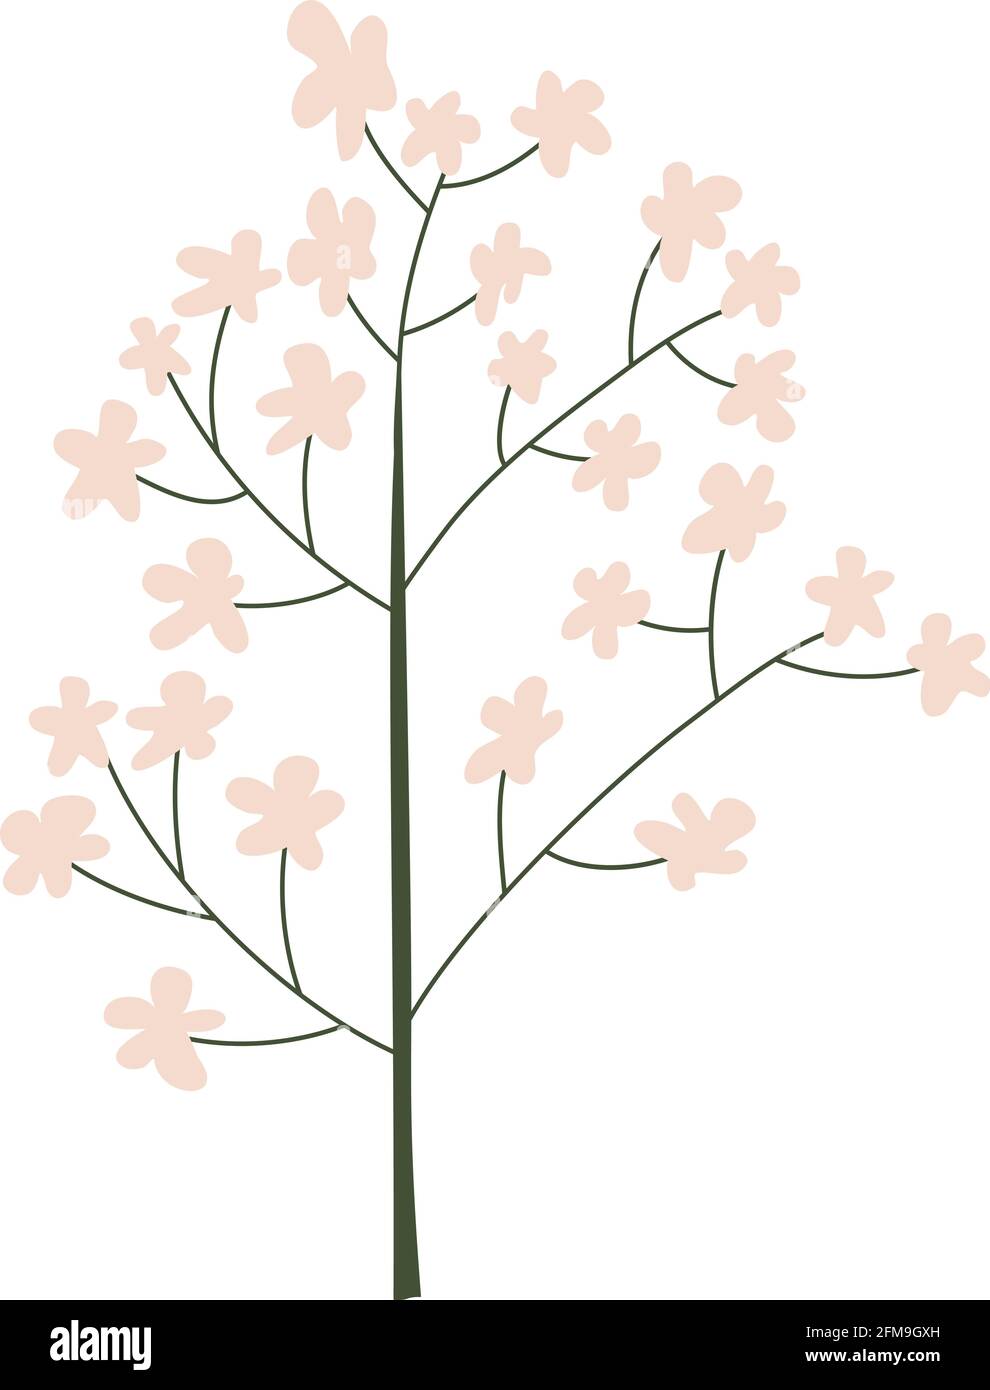 Vecteur fleur sakura de printemps stylisée. Illustration scandinave art élément d'été. Image florale d'été décorative pour carte de Saint-Valentin ou Illustration de Vecteur